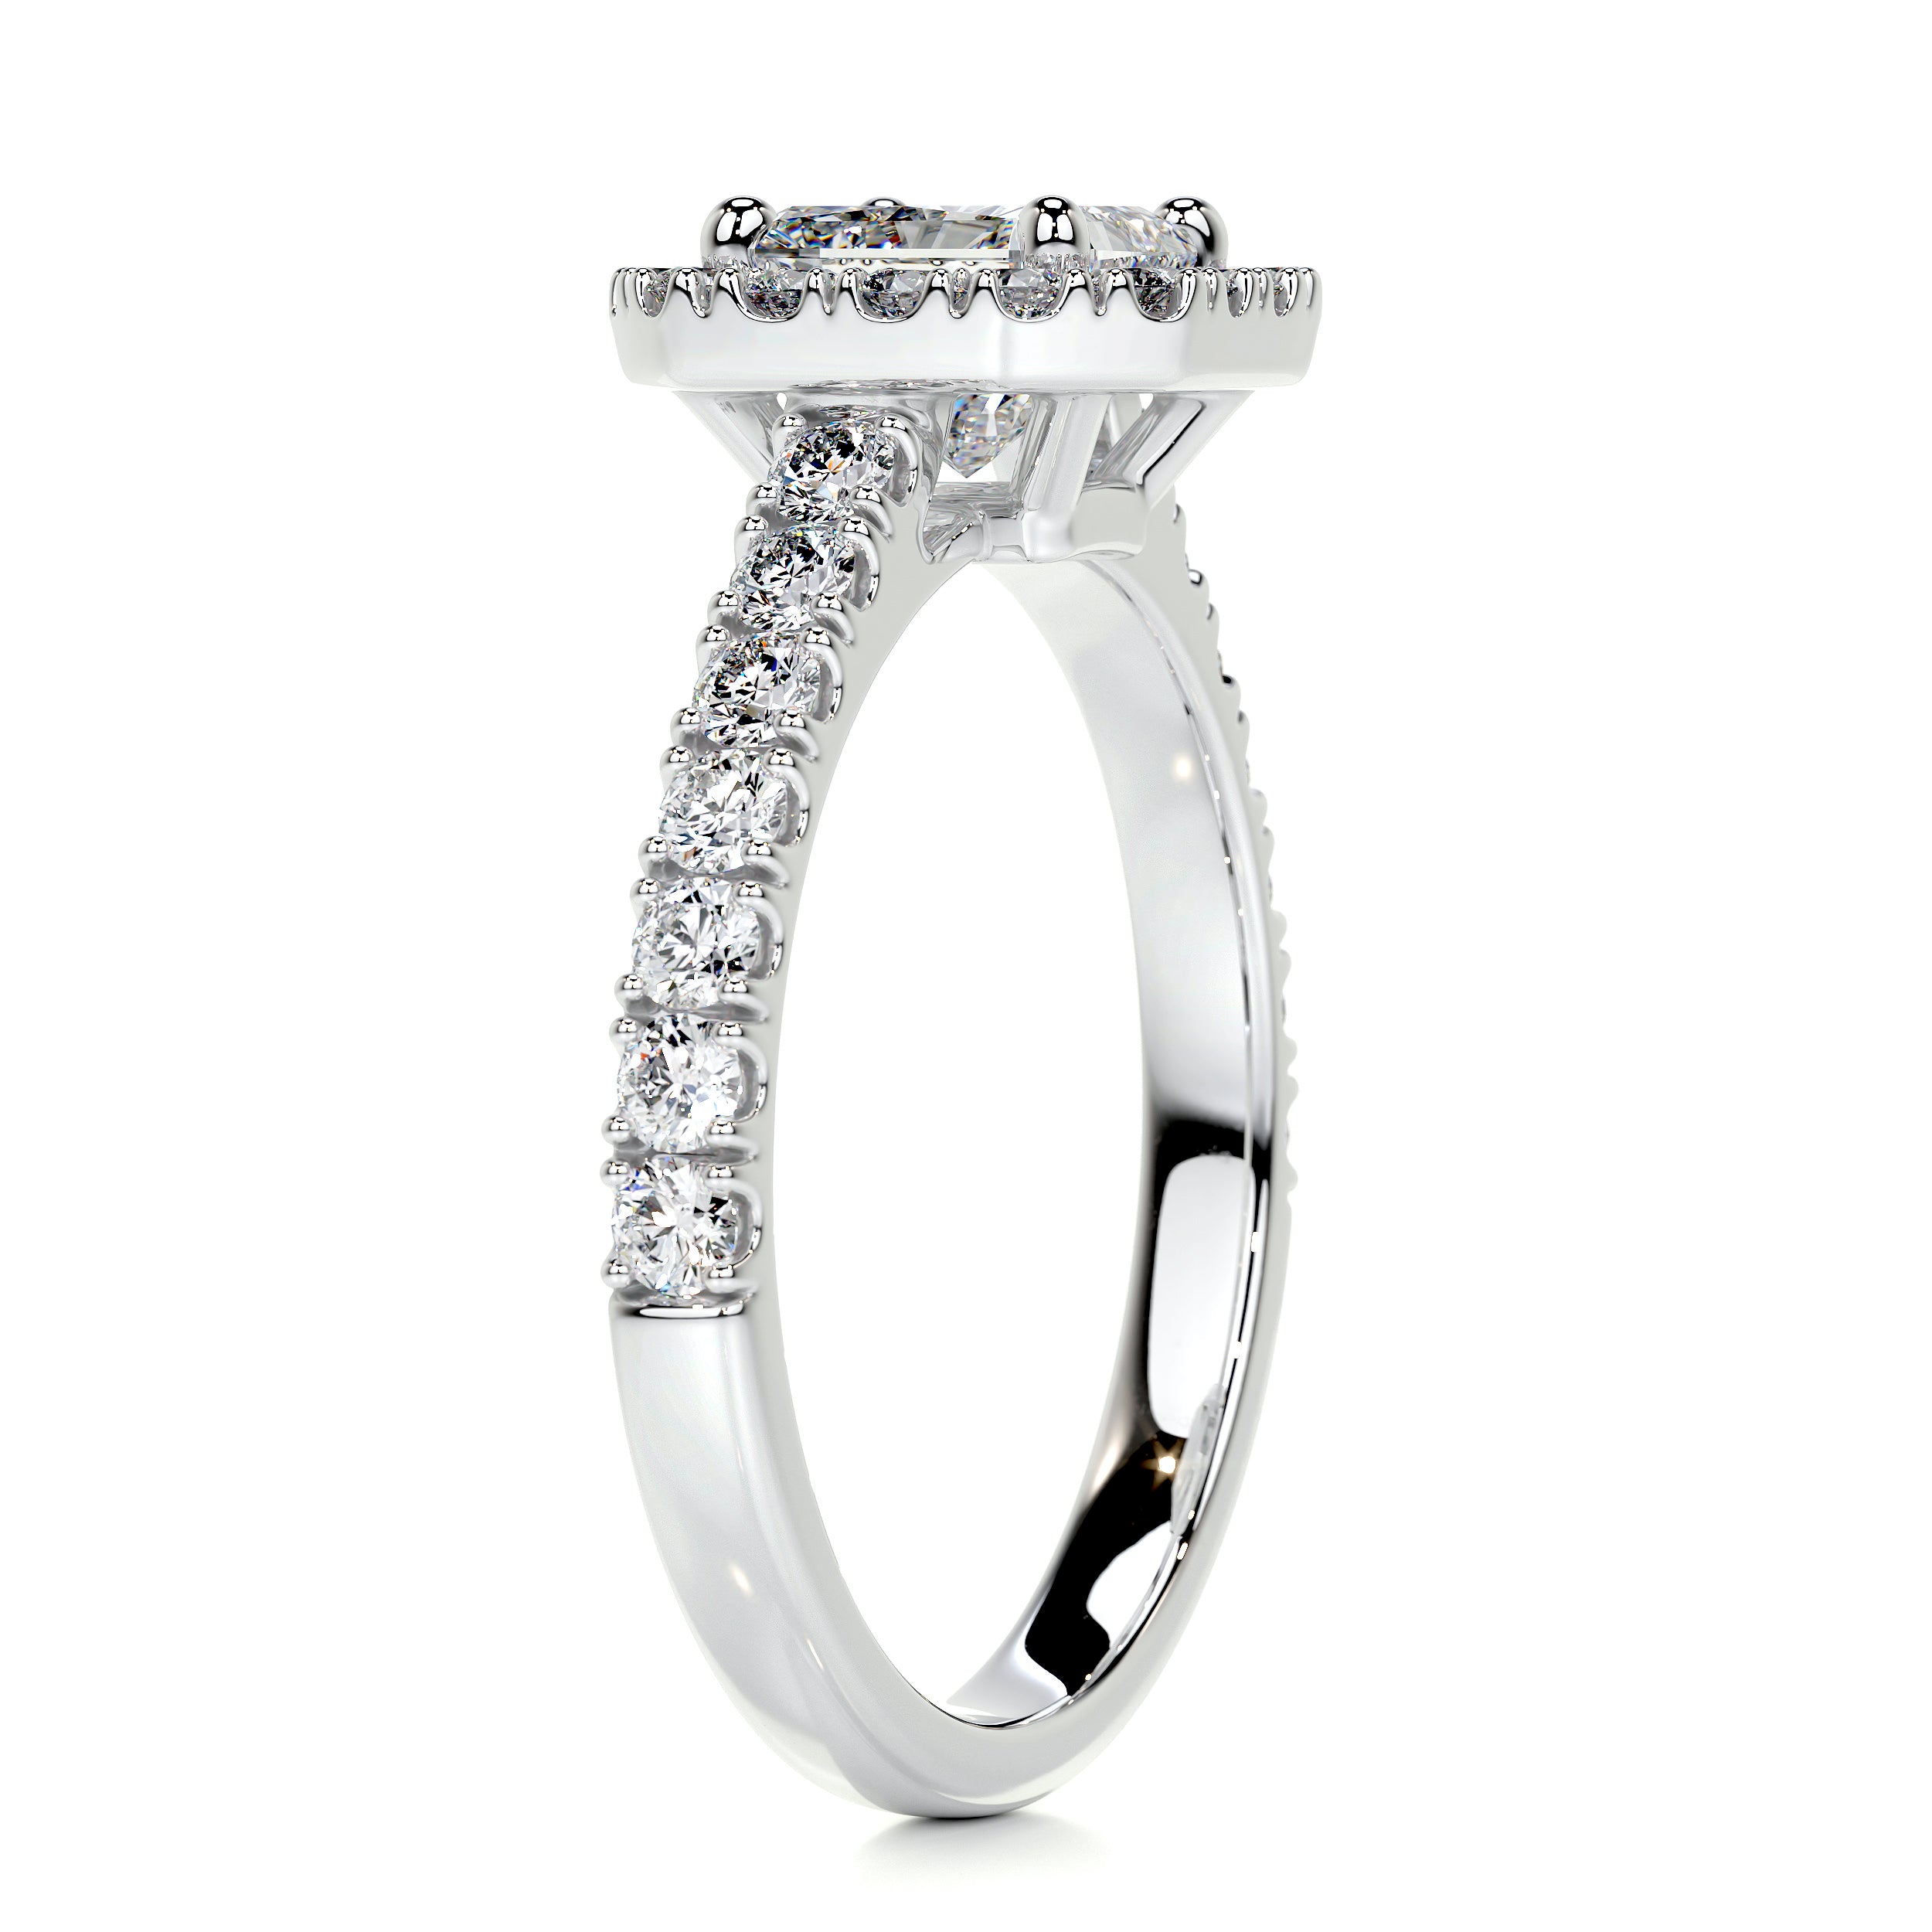 Cora Diamond Engagement Ring   (1.35 Carat) -14K White Gold